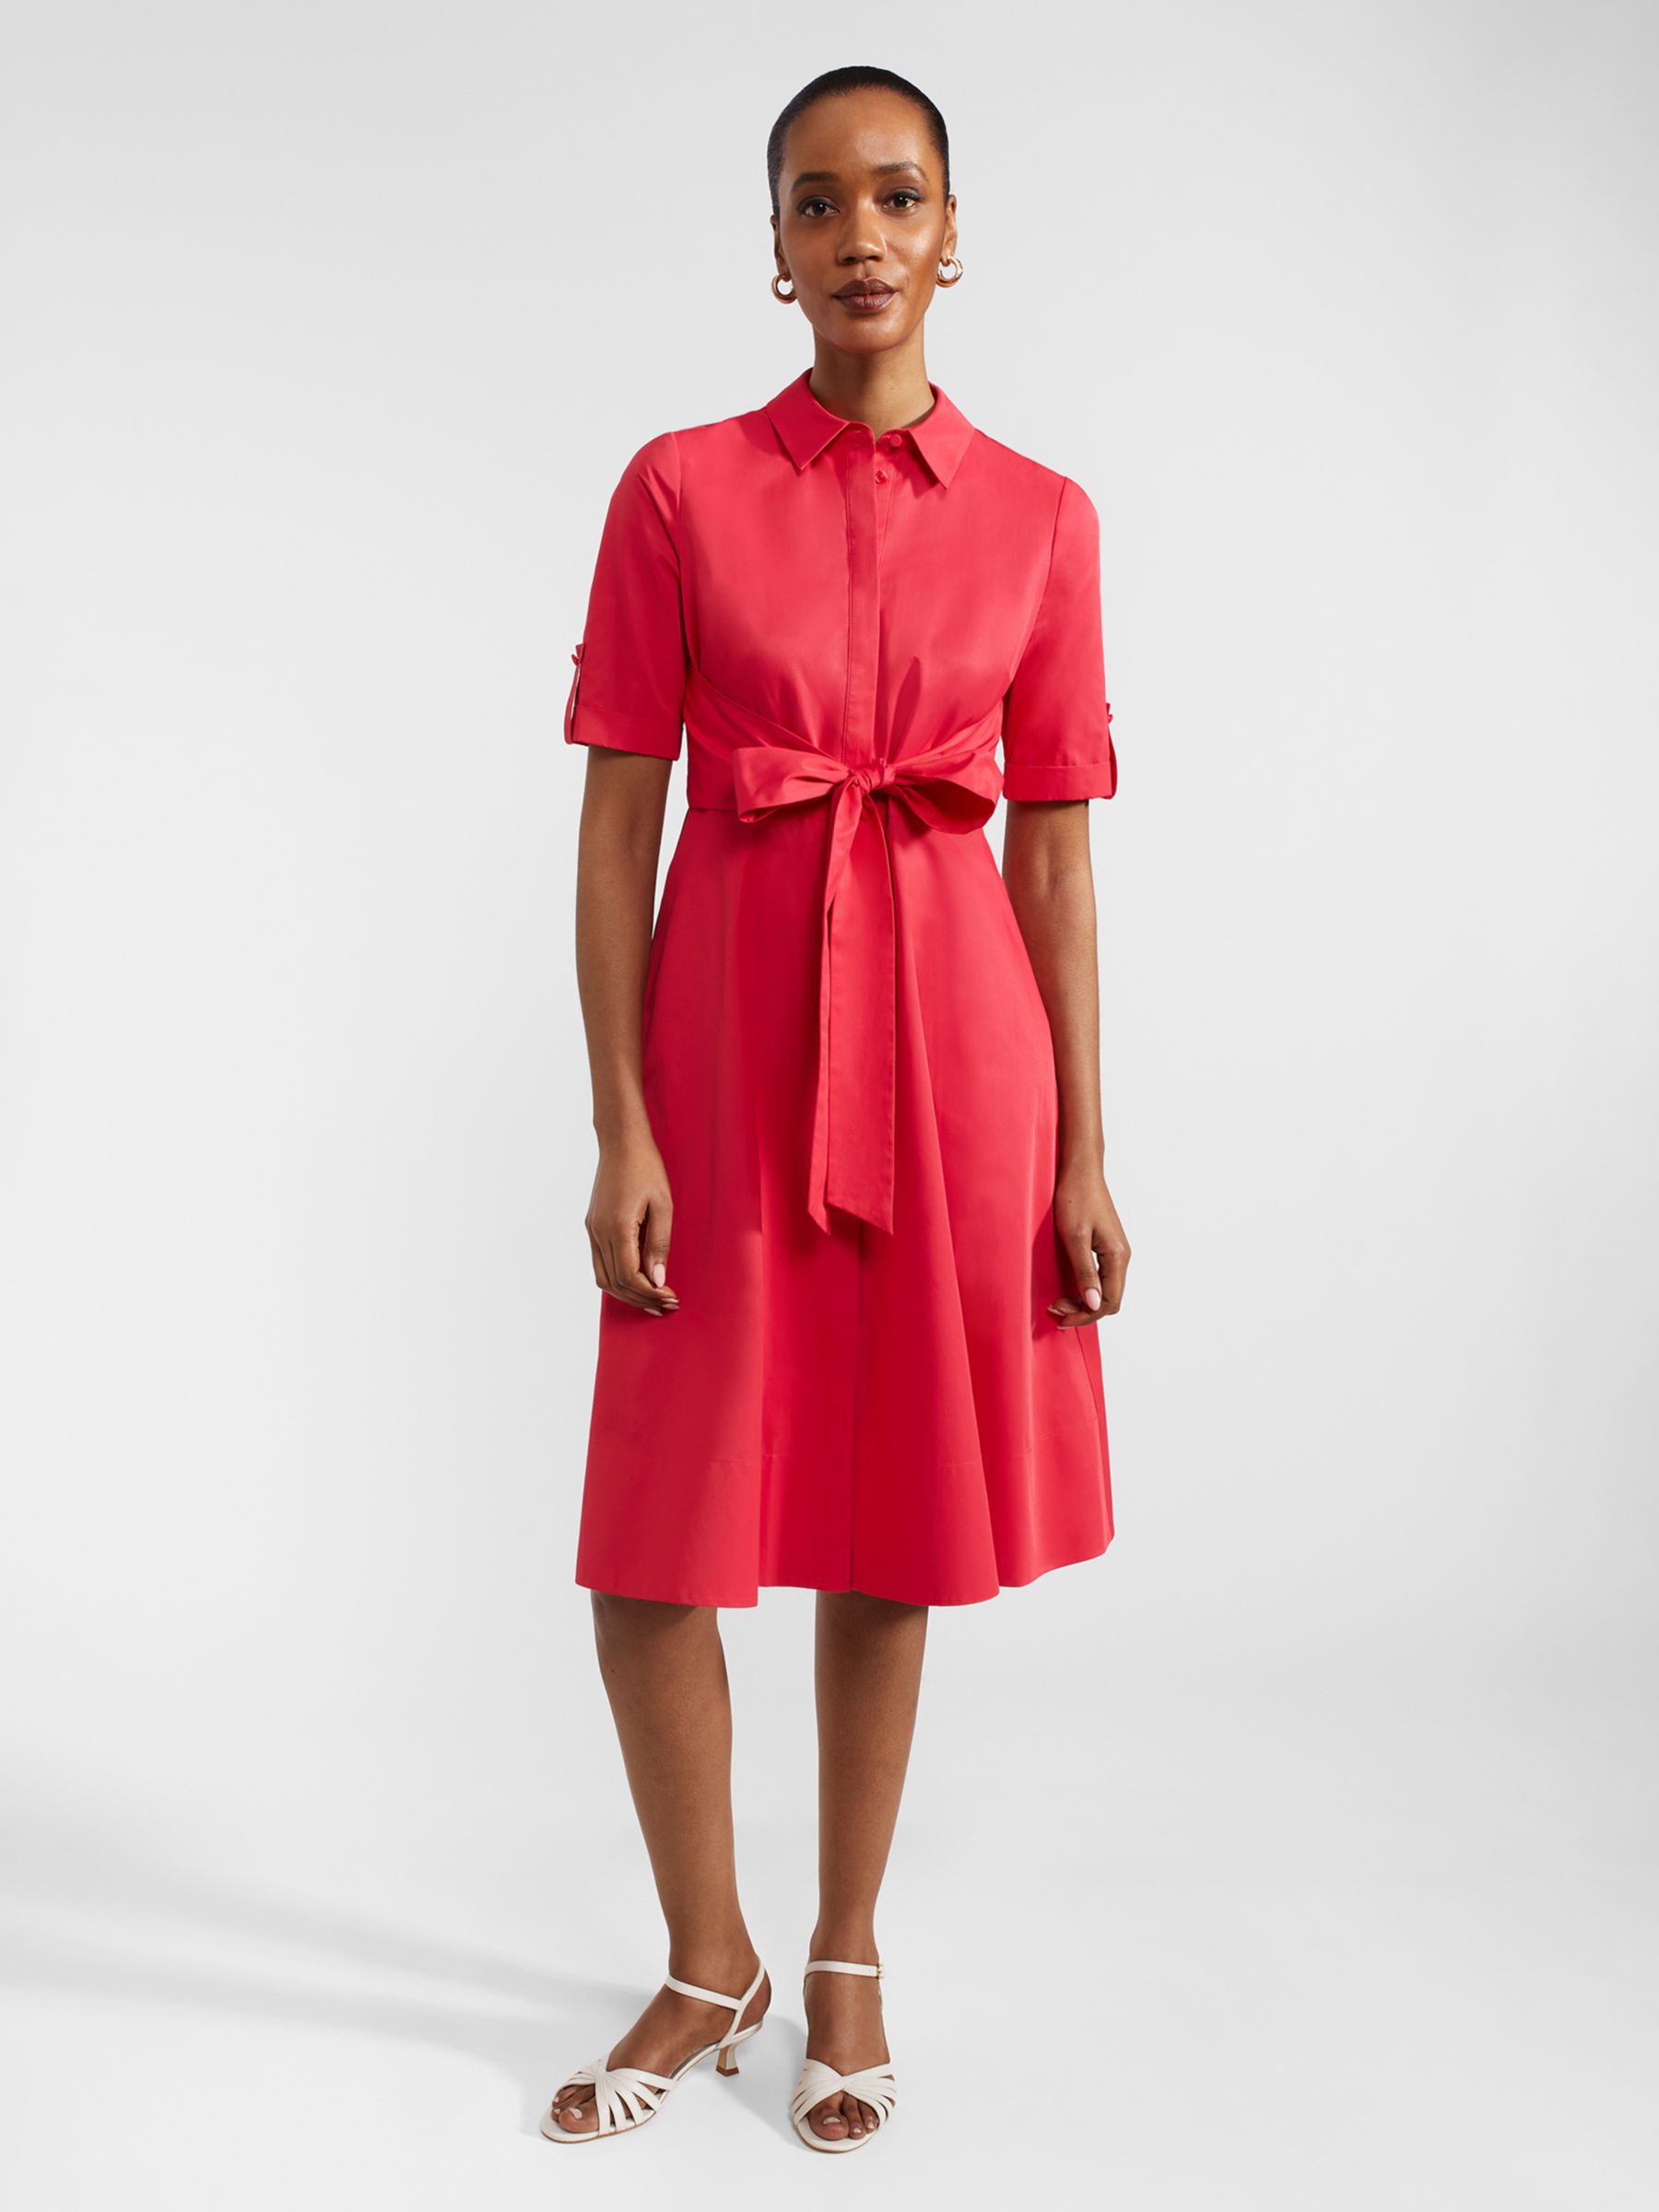 Hobbs Tarianna Belted Shirt Dress, Rouge Pink, 18